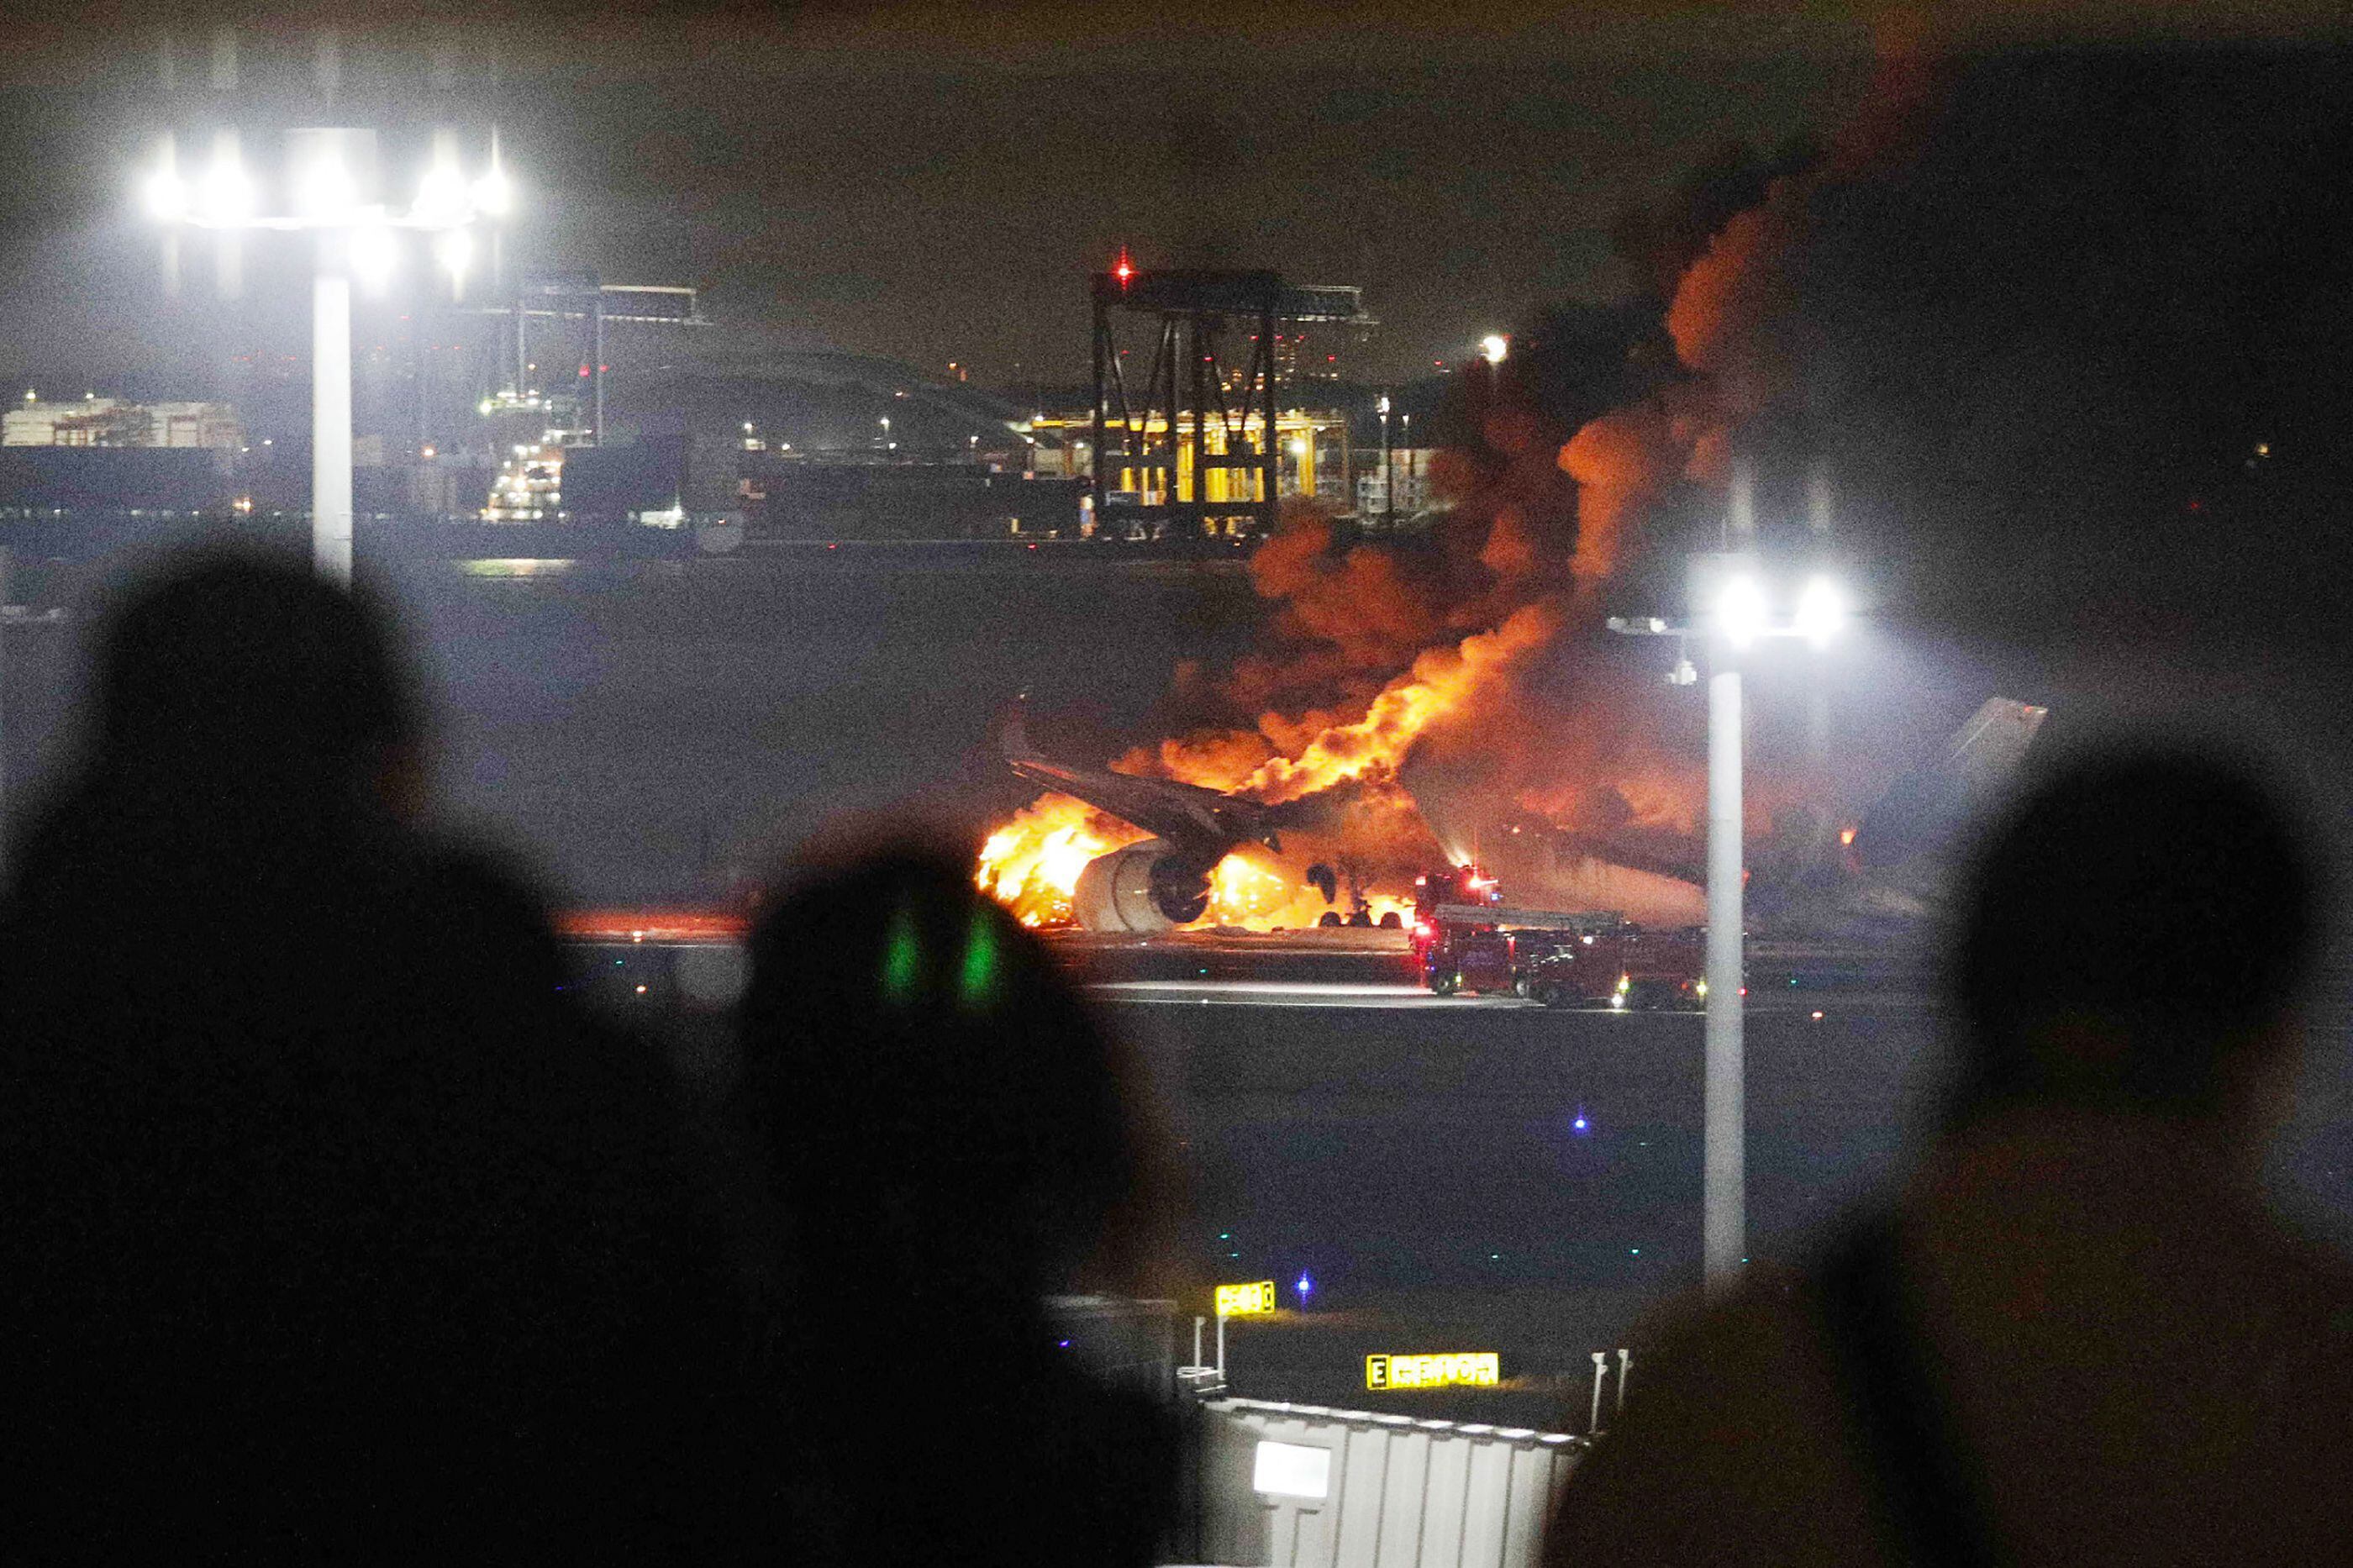 El avión de línea pertenecía a Japan Airlines y se incendió tras el choque. A pesar de ello, los 379 pasajeros y 12 tripulantes lograron ser evacuados.